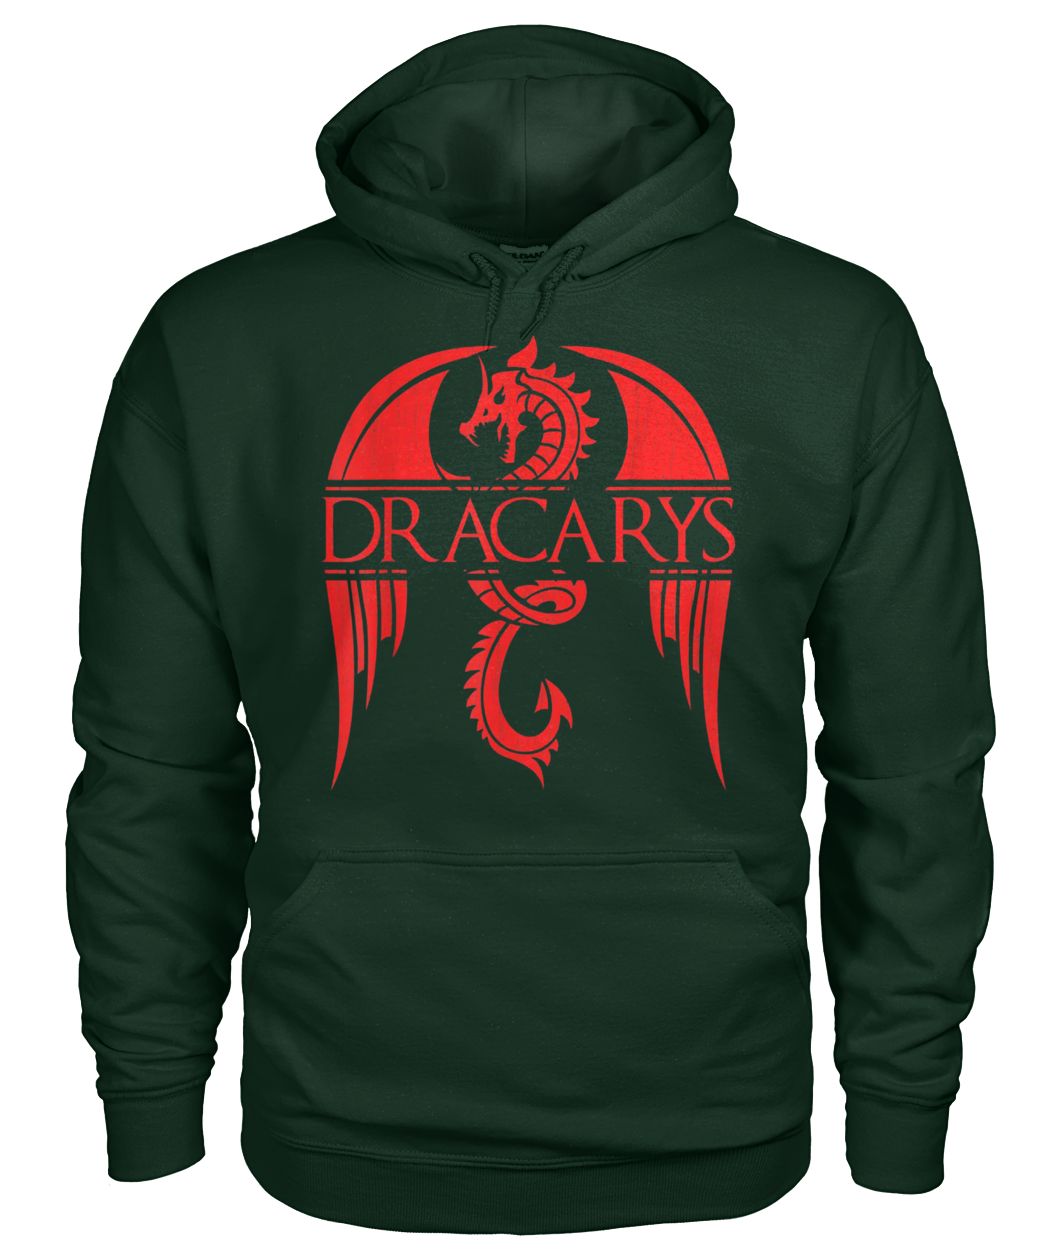 Dragon dracarys game of thrones gildan hoodie